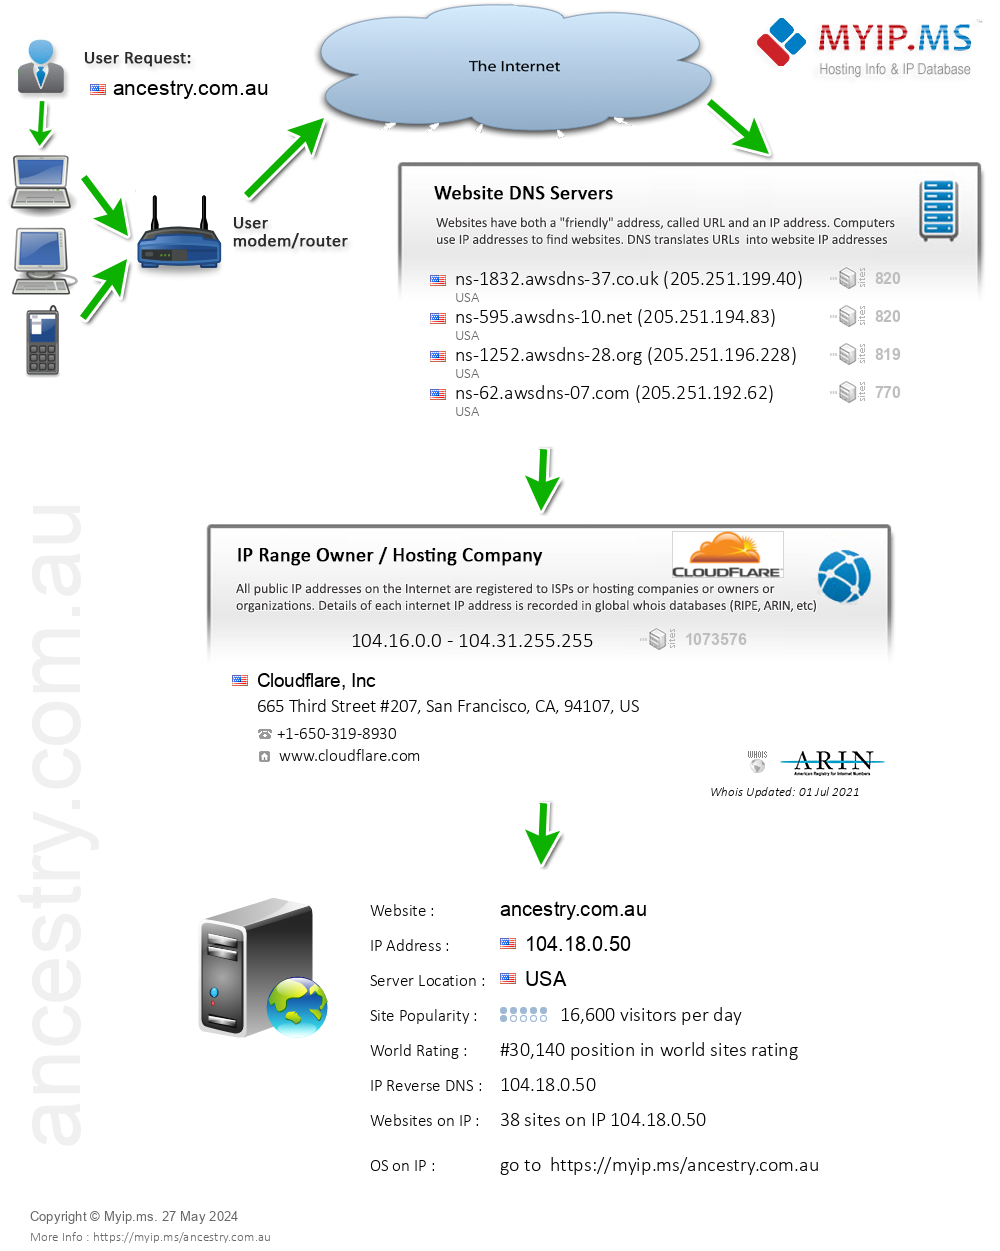 Ancestry.com.au - Website Hosting Visual IP Diagram